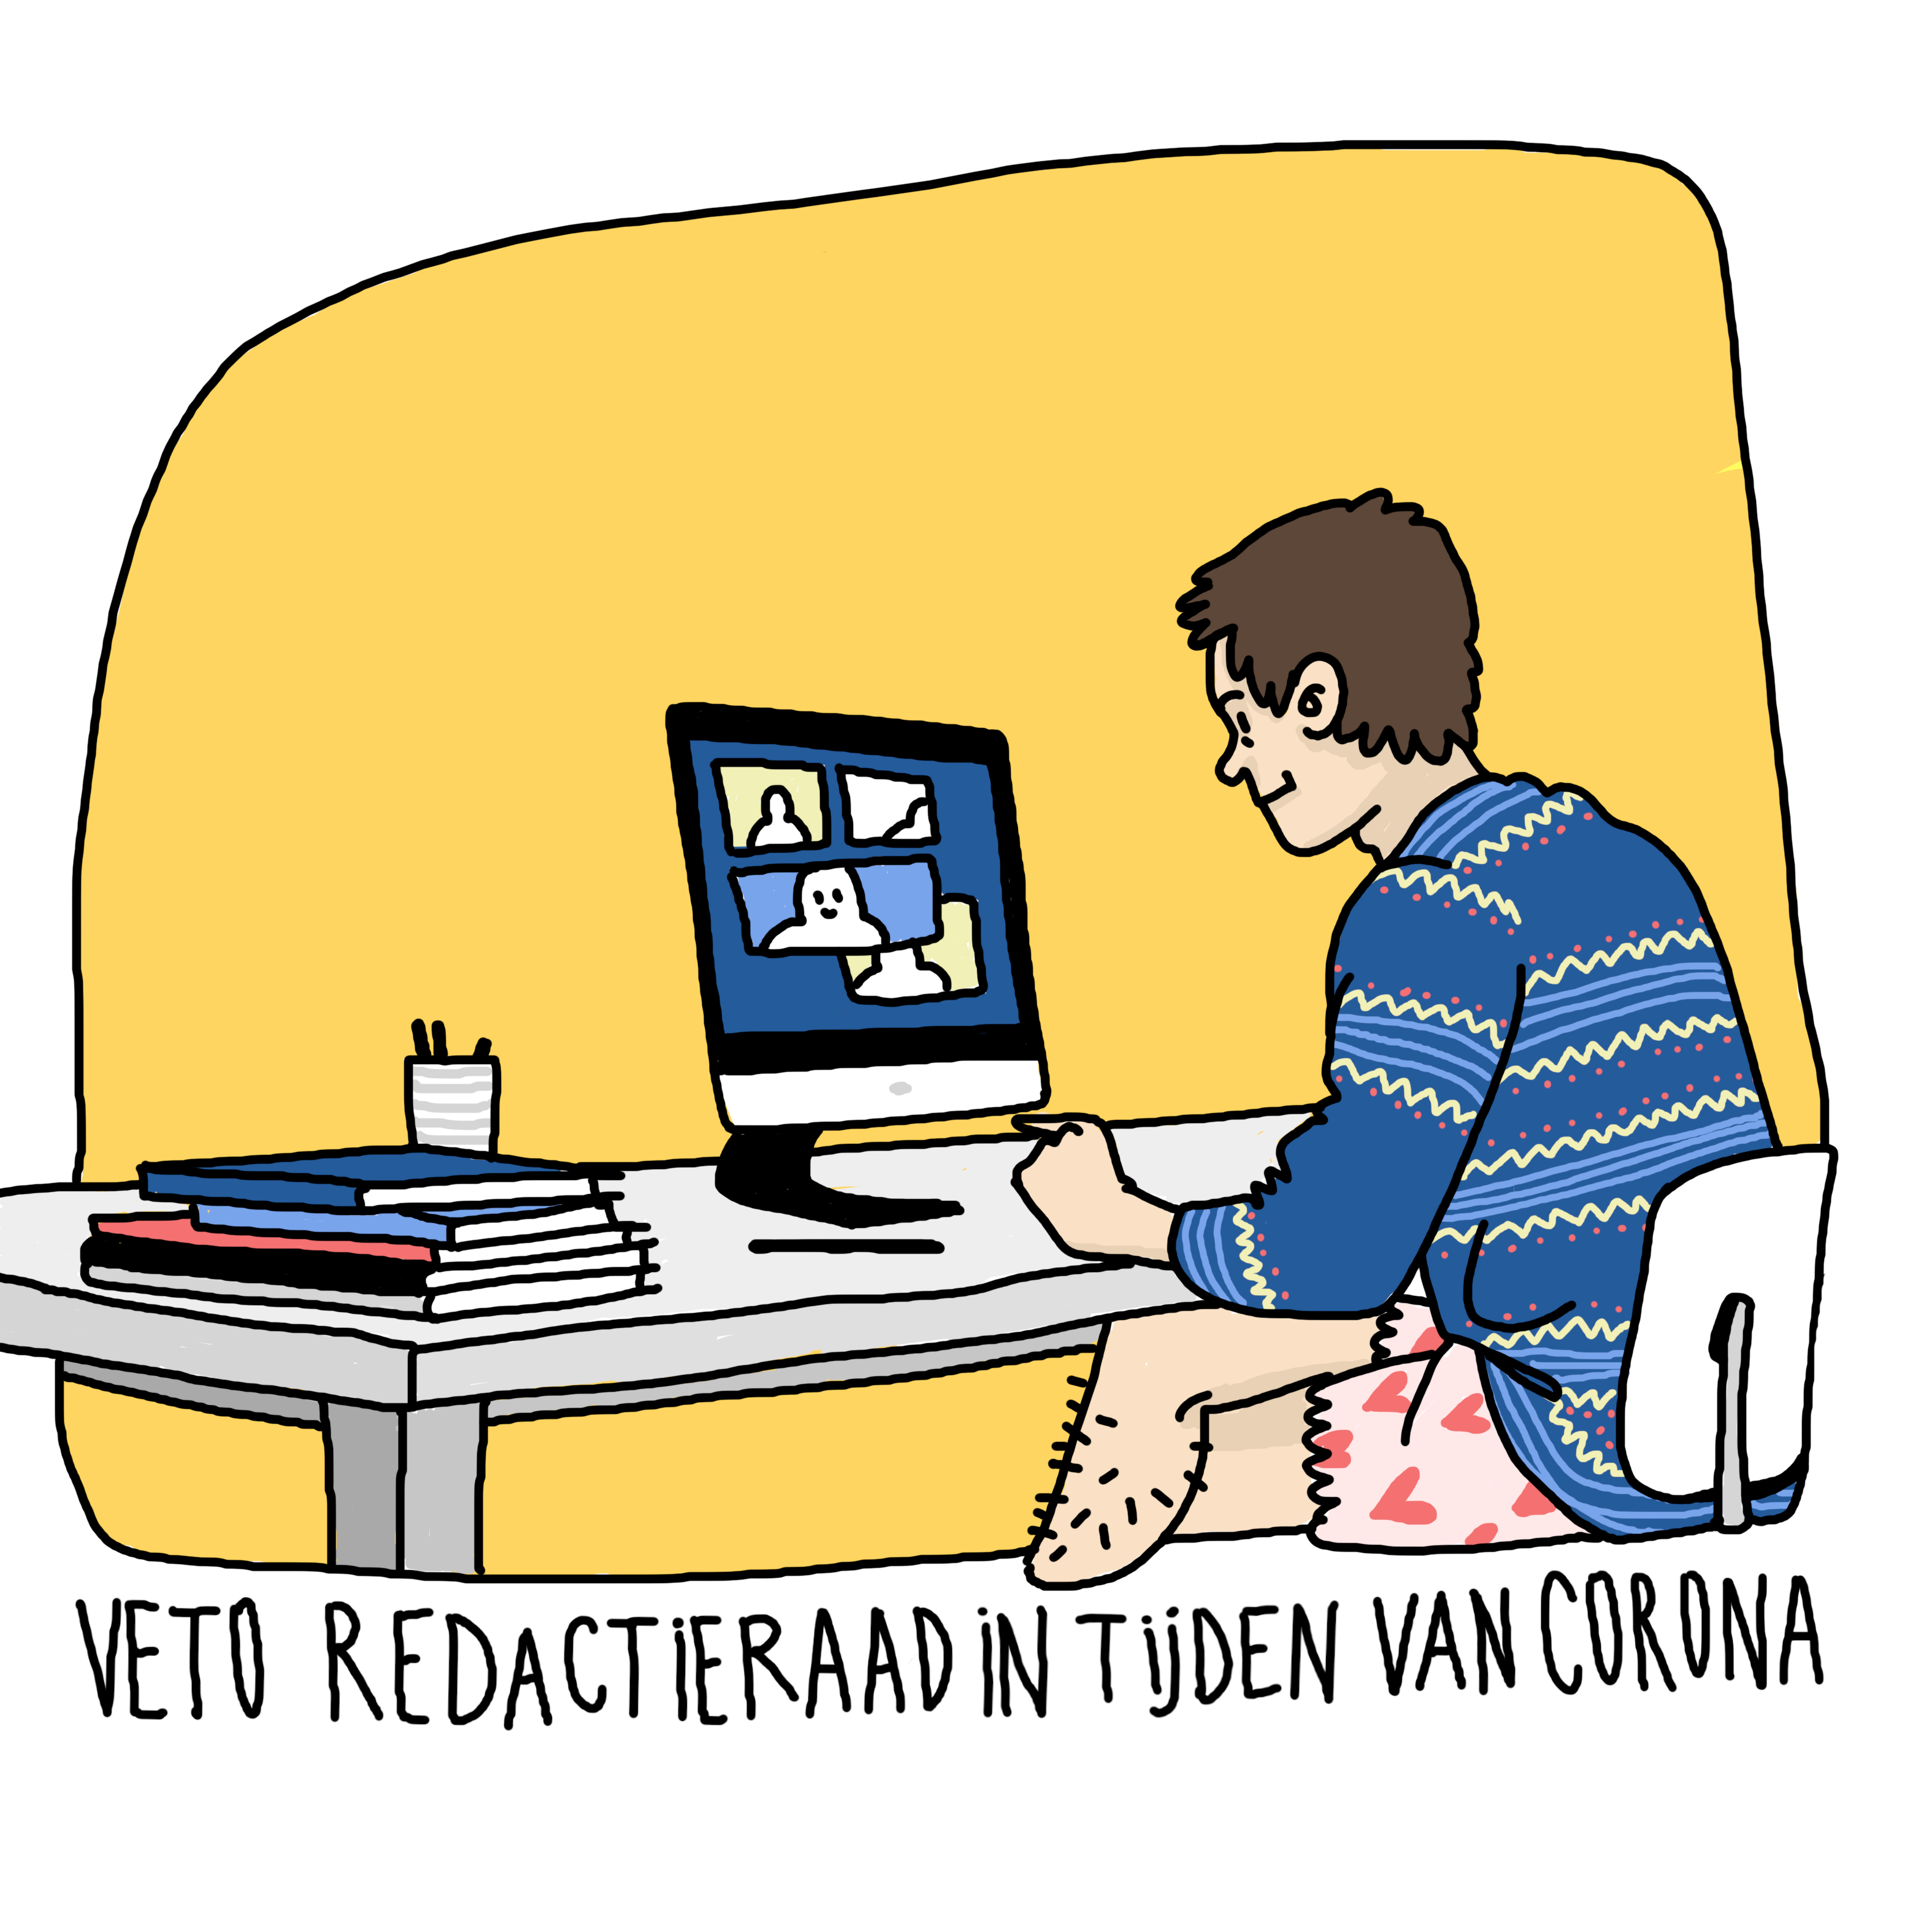 'Veto redactieraad in tijden van corona' Een redactielid zit in boxershort te vergaderen achter zijn computer.